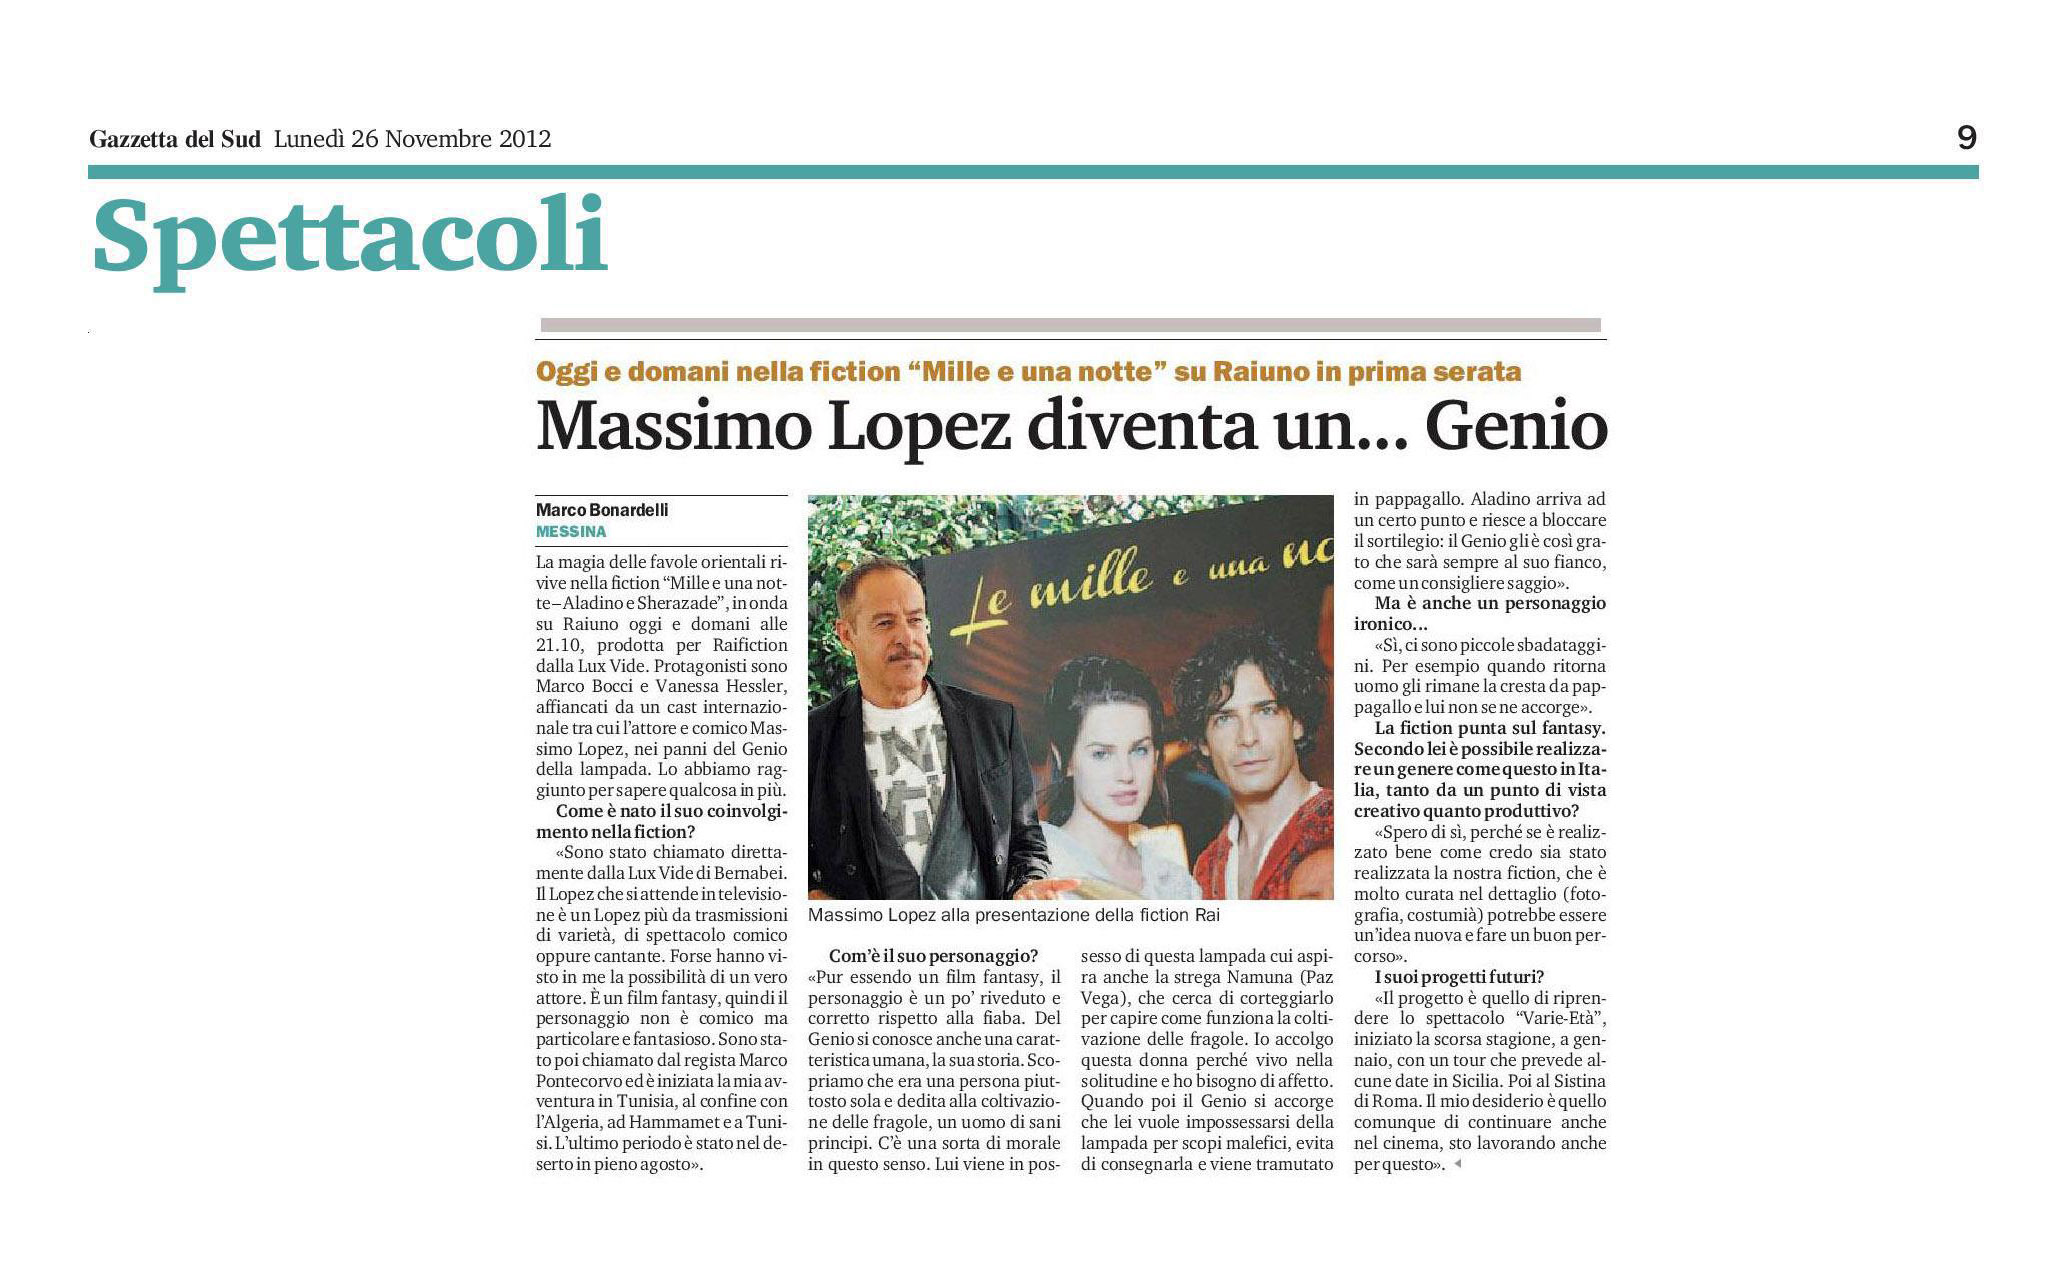 6 - Massimo Lopez diventa un Genio - Gazzetta del Sud - 26 novembre 2012.jpg